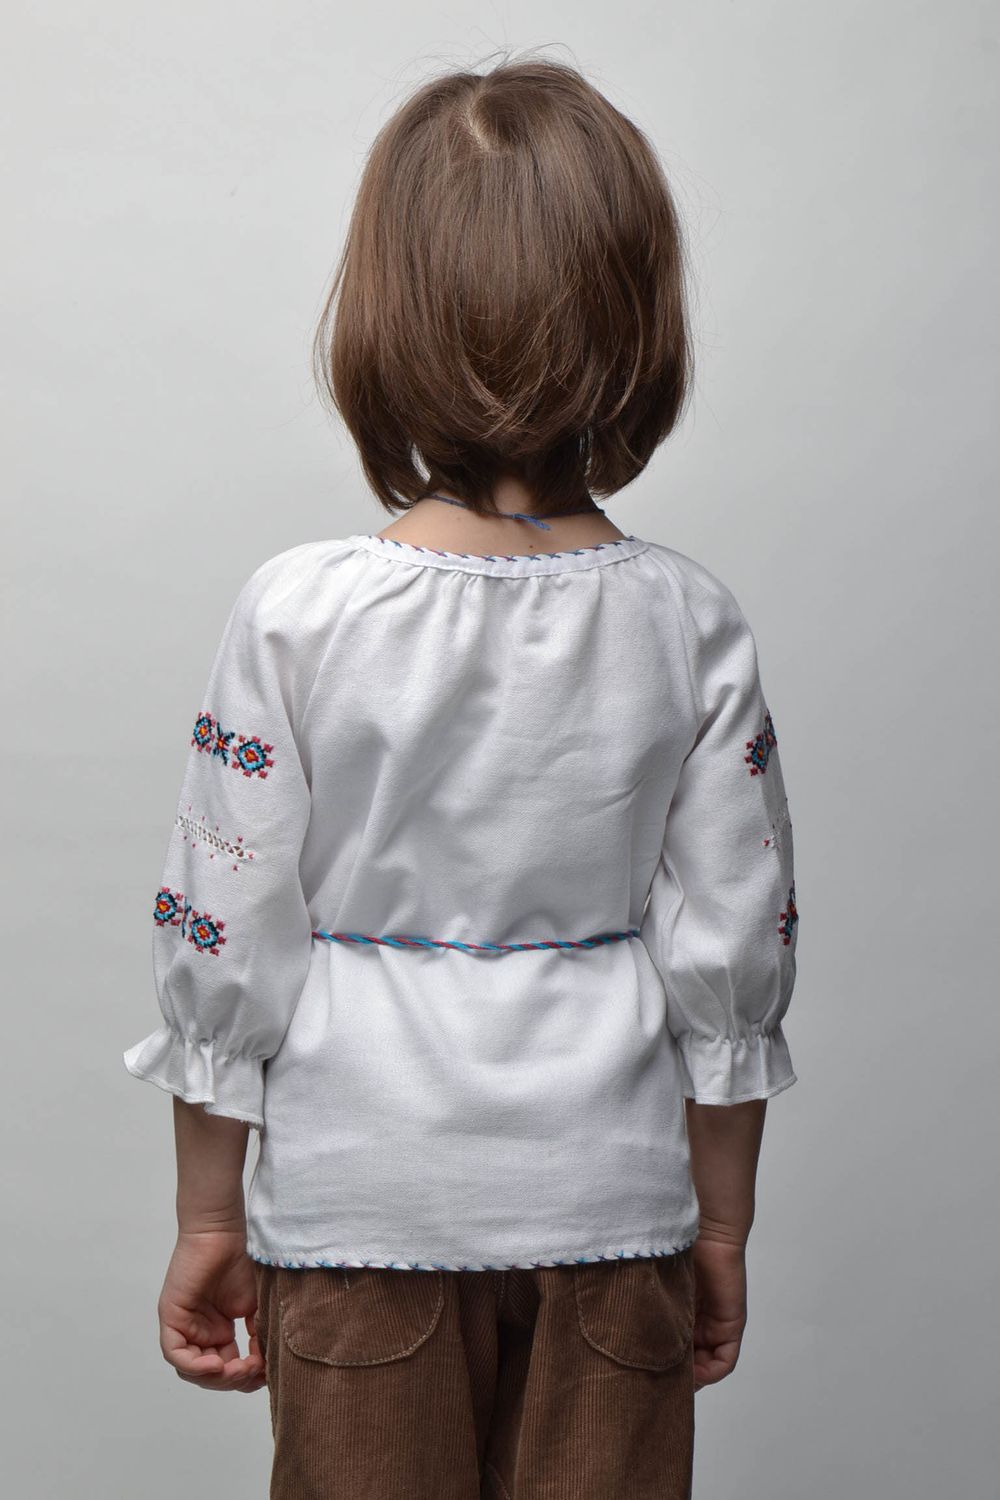 Вышитая рубашка с растительными мотивами на ребенка 5-7 лет фото 4